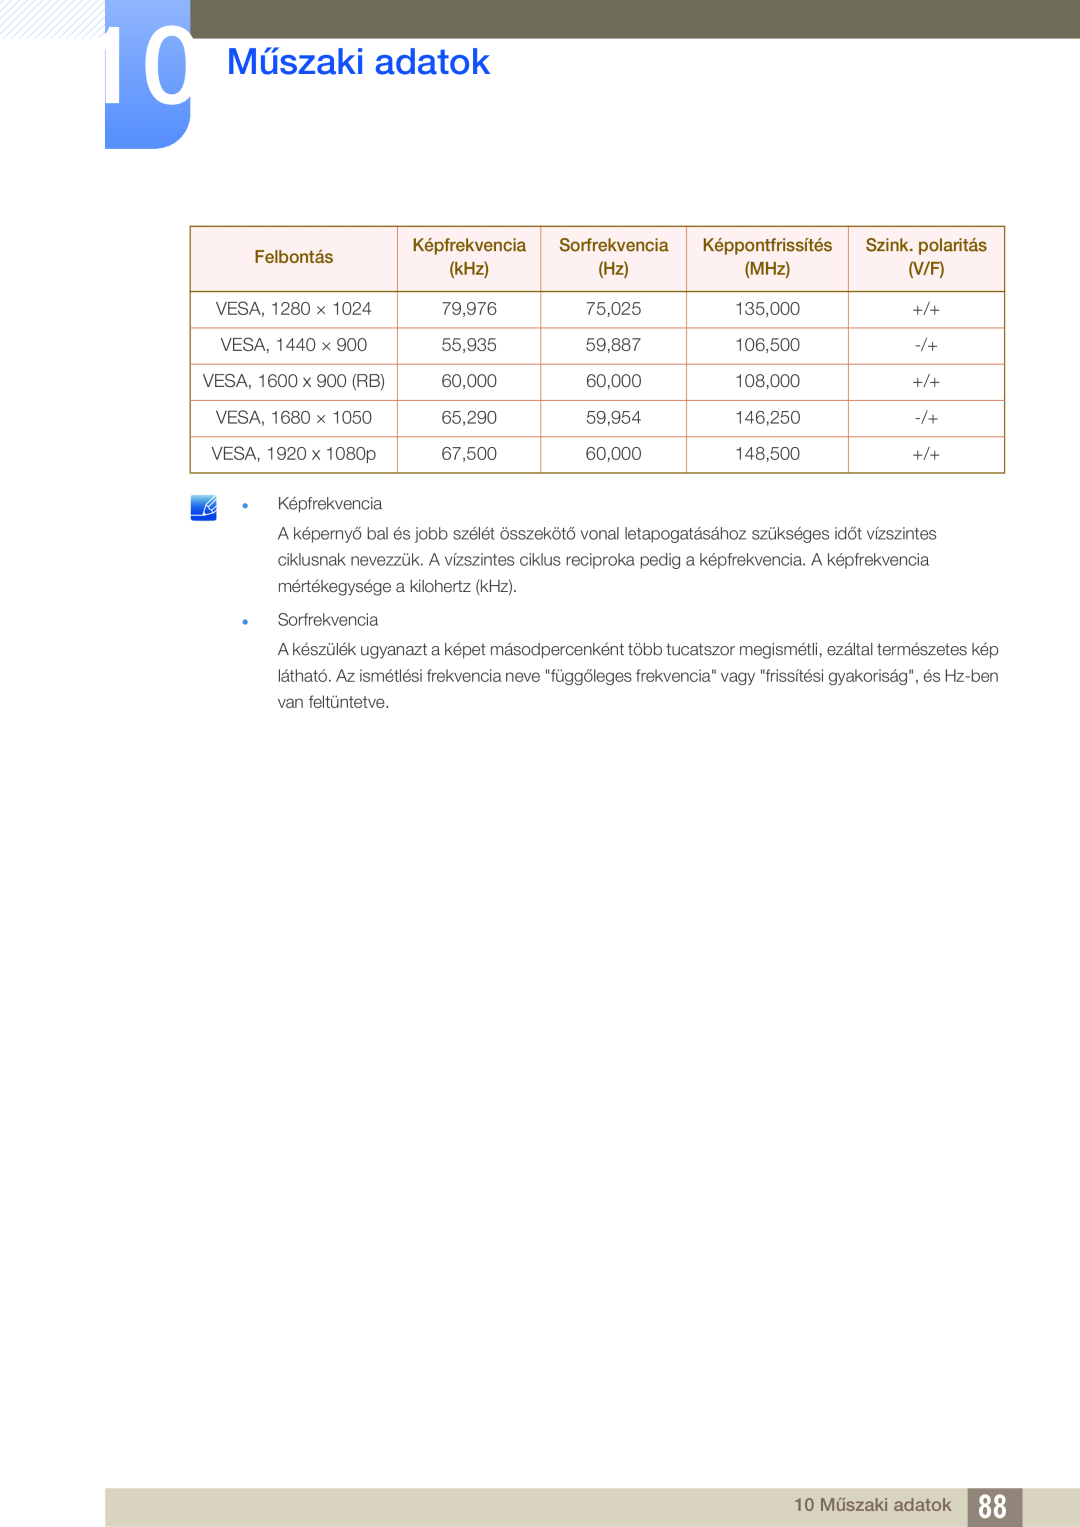 Samsung LS24C550VL/EN manual 10 Műszaki adatok, Felbontás, Képfrekvencia, Sorfrekvencia, Képpontfrissítés, Szink. polaritás 